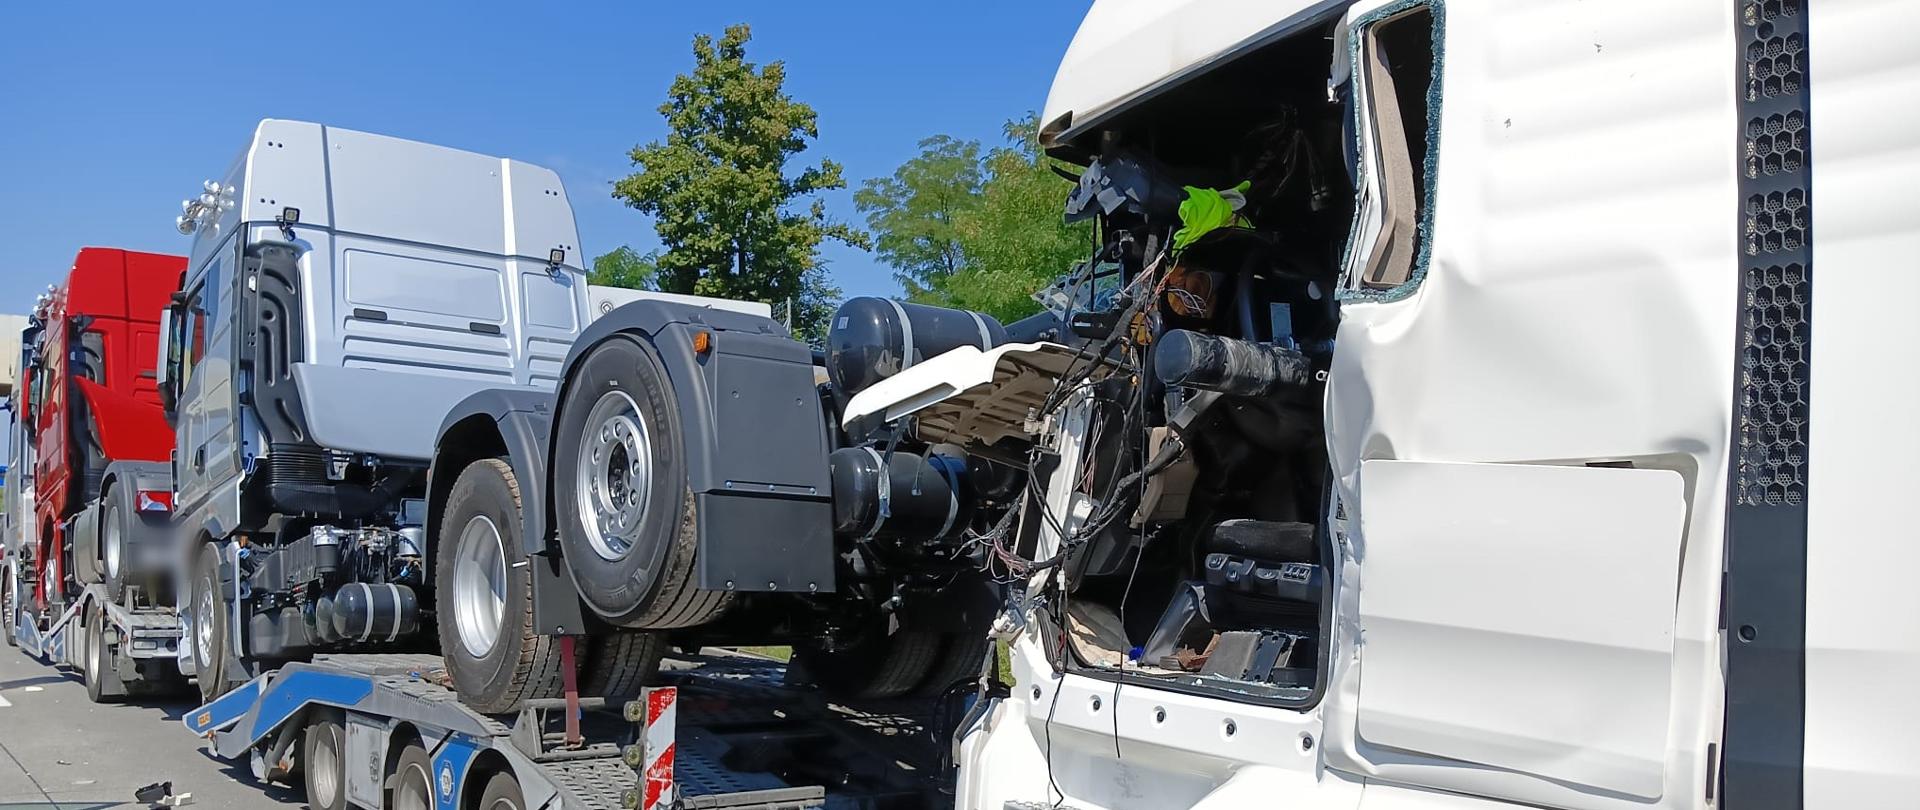 Obraz przedstawia zniszczony samochód ciężarowy po najechaniu na tył pojazdu stojącego w korku.